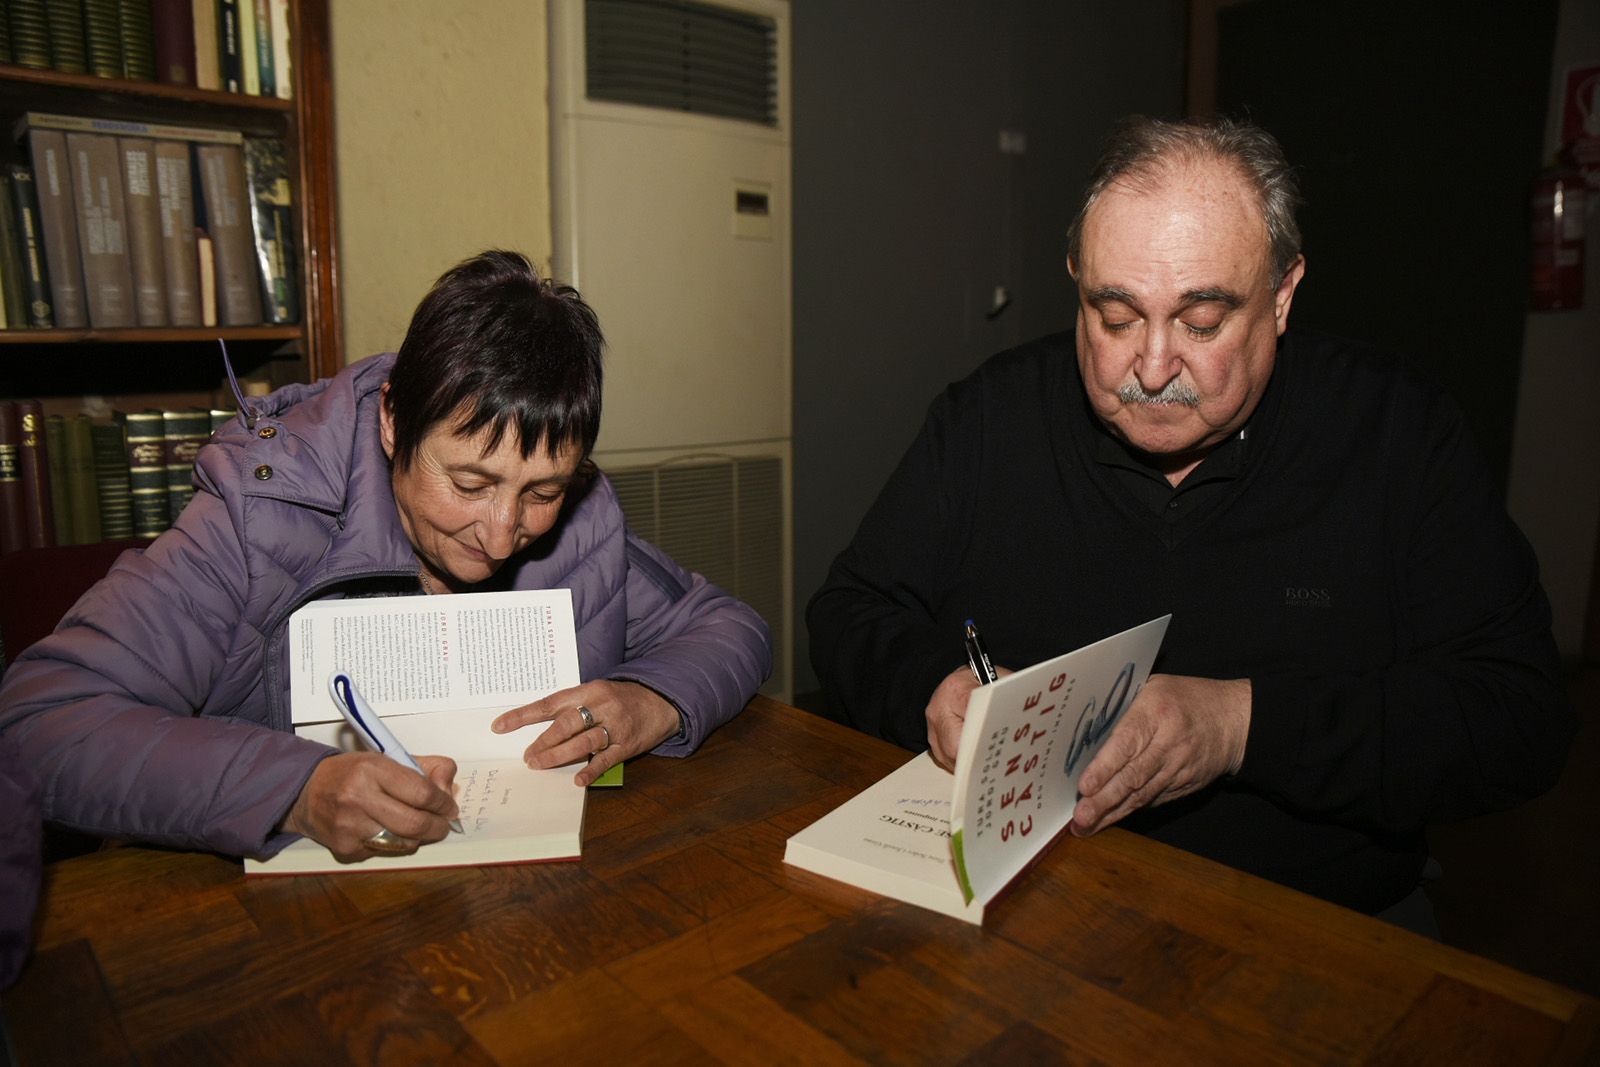 Presentació del llibre ‘Sense càstig’ de Tura Soler i Jordi Grau. FOTO: Bernat Millet.